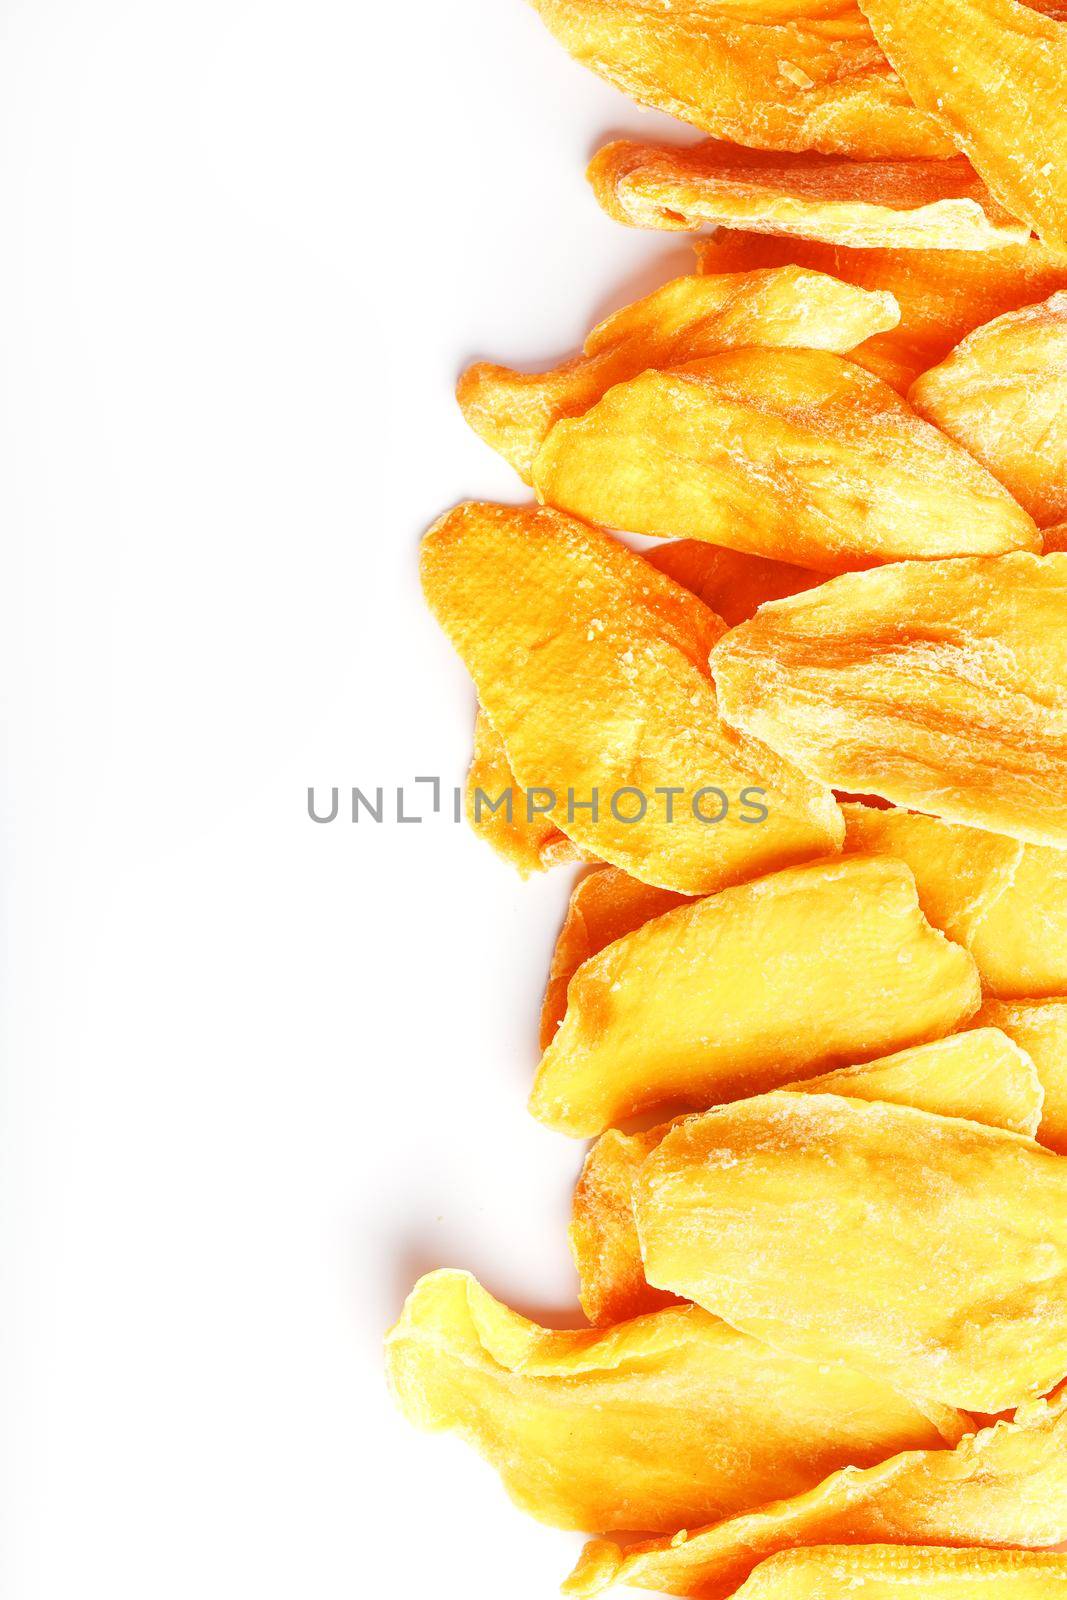 Orange Slices of Dried Sugar Mango Isolated on White Background